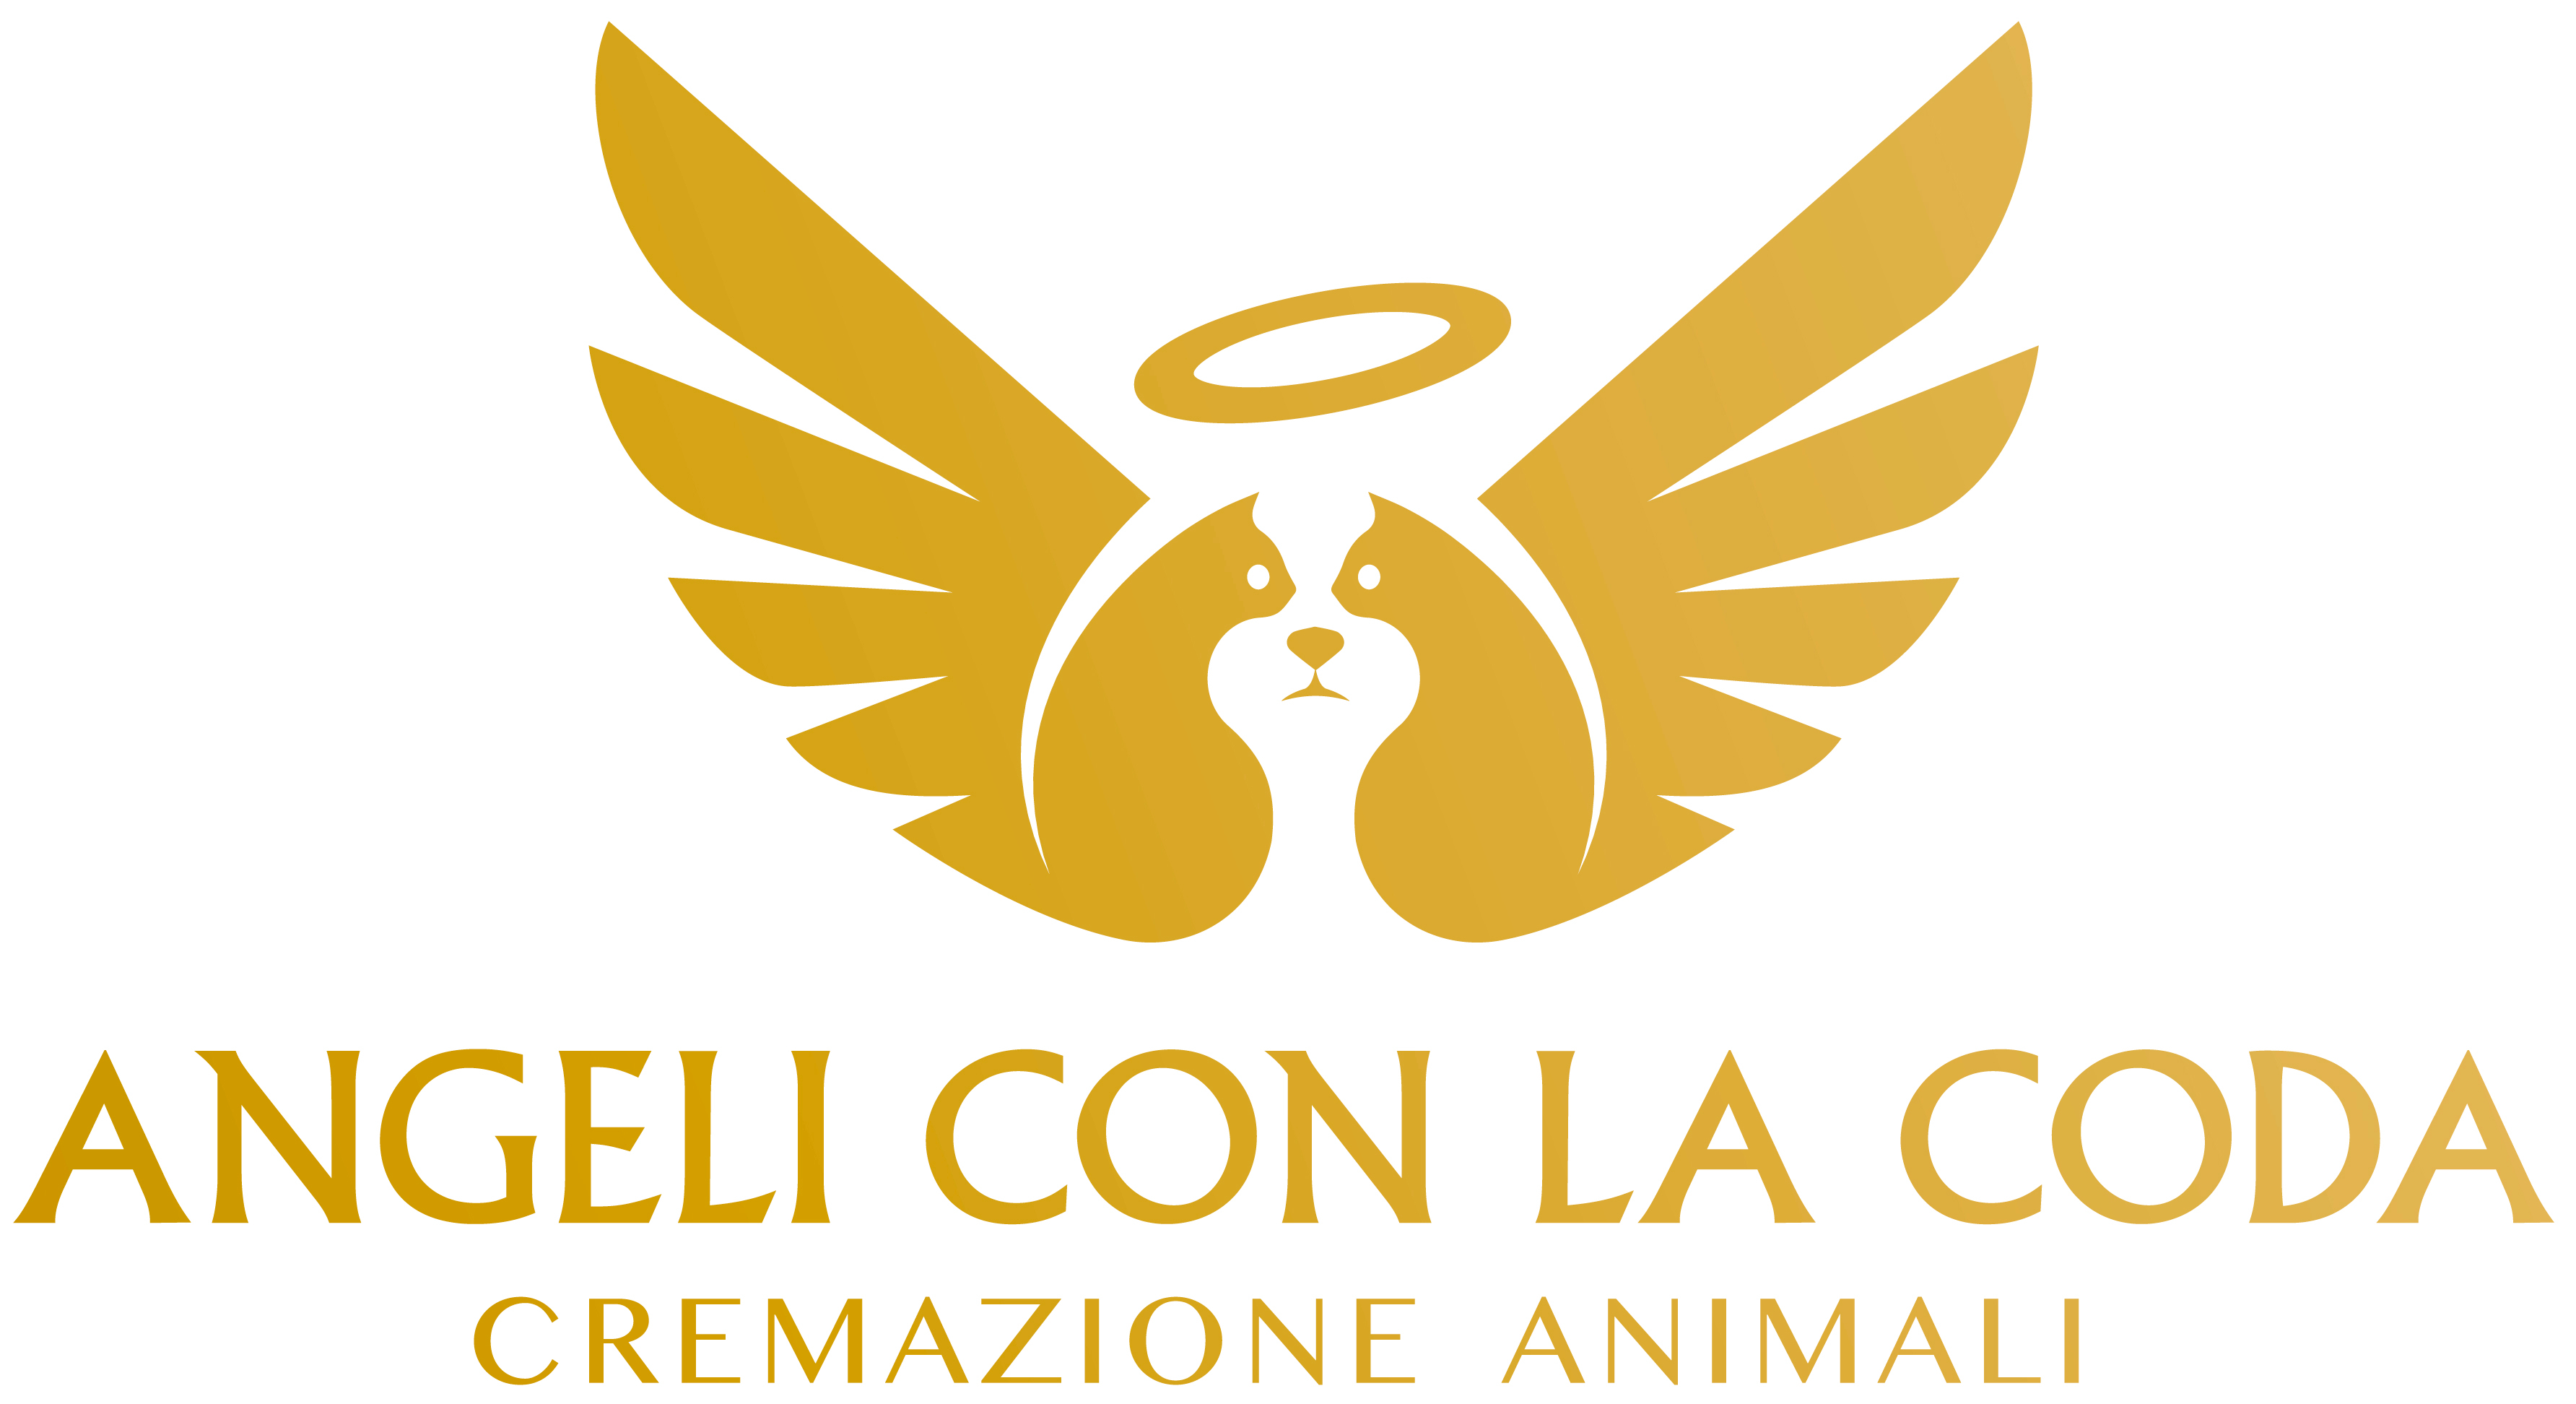 Angeli con la coda - Cremazione Animali - Vai al sito dedicato